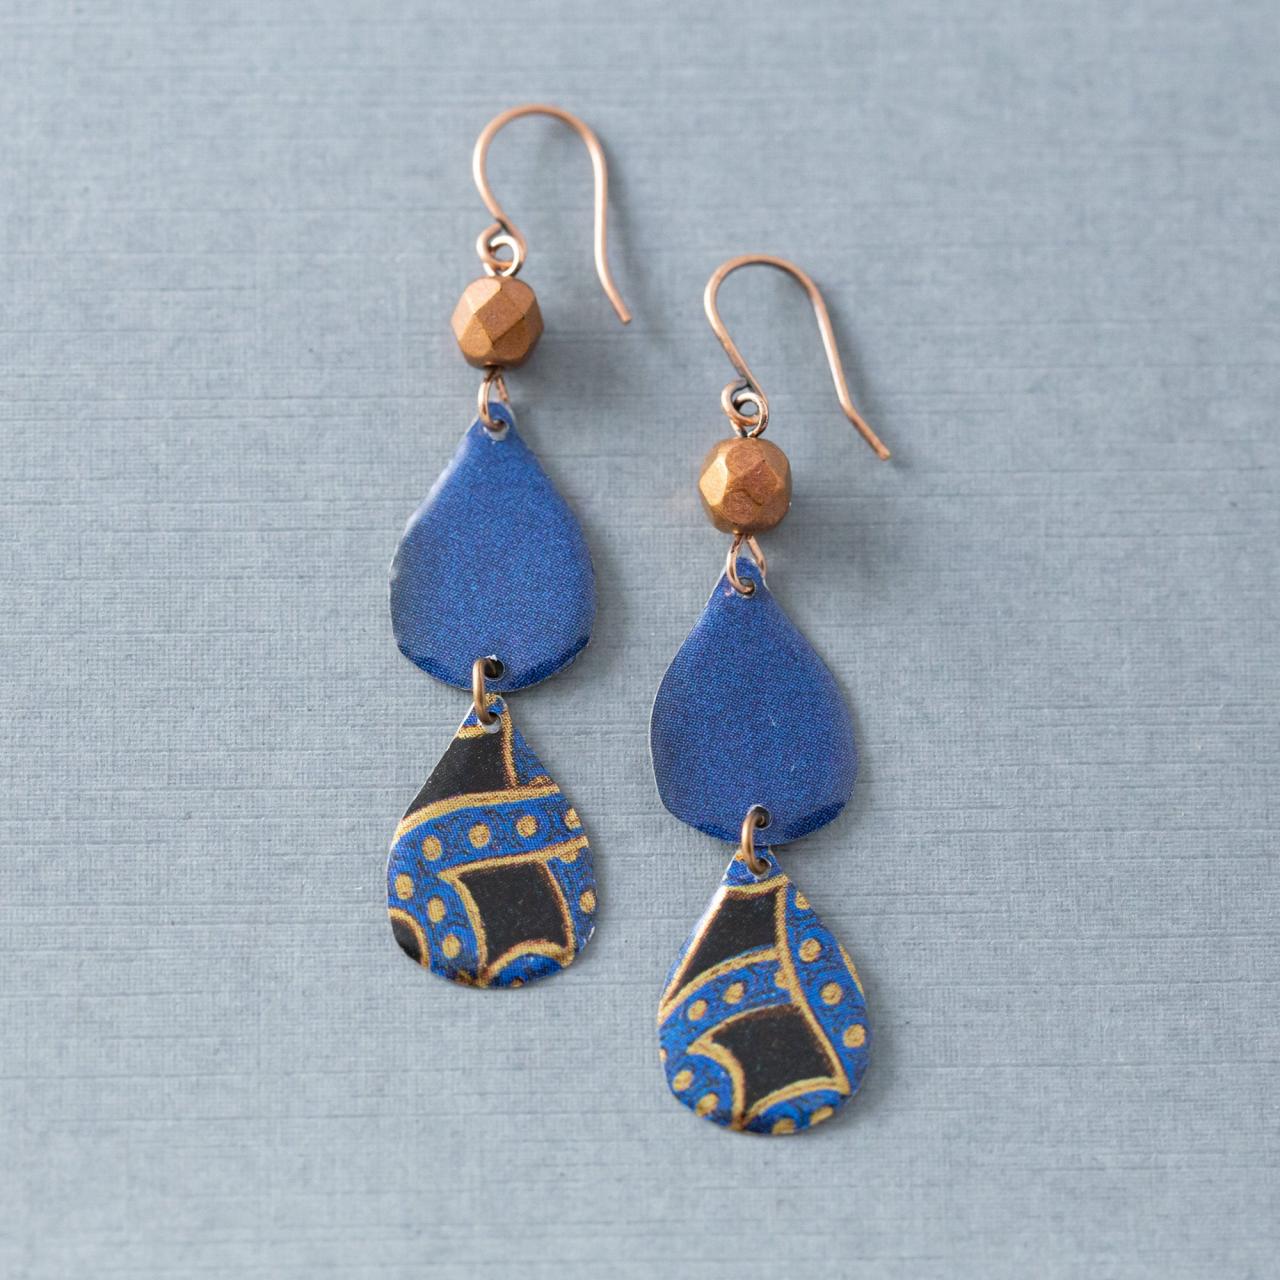 Blue & Copper Teardrop Earrings, Mismatched Earrings, Boho Earrings, Mixed Metal Earrings, Tin Earrings, Bohemian Jewelry